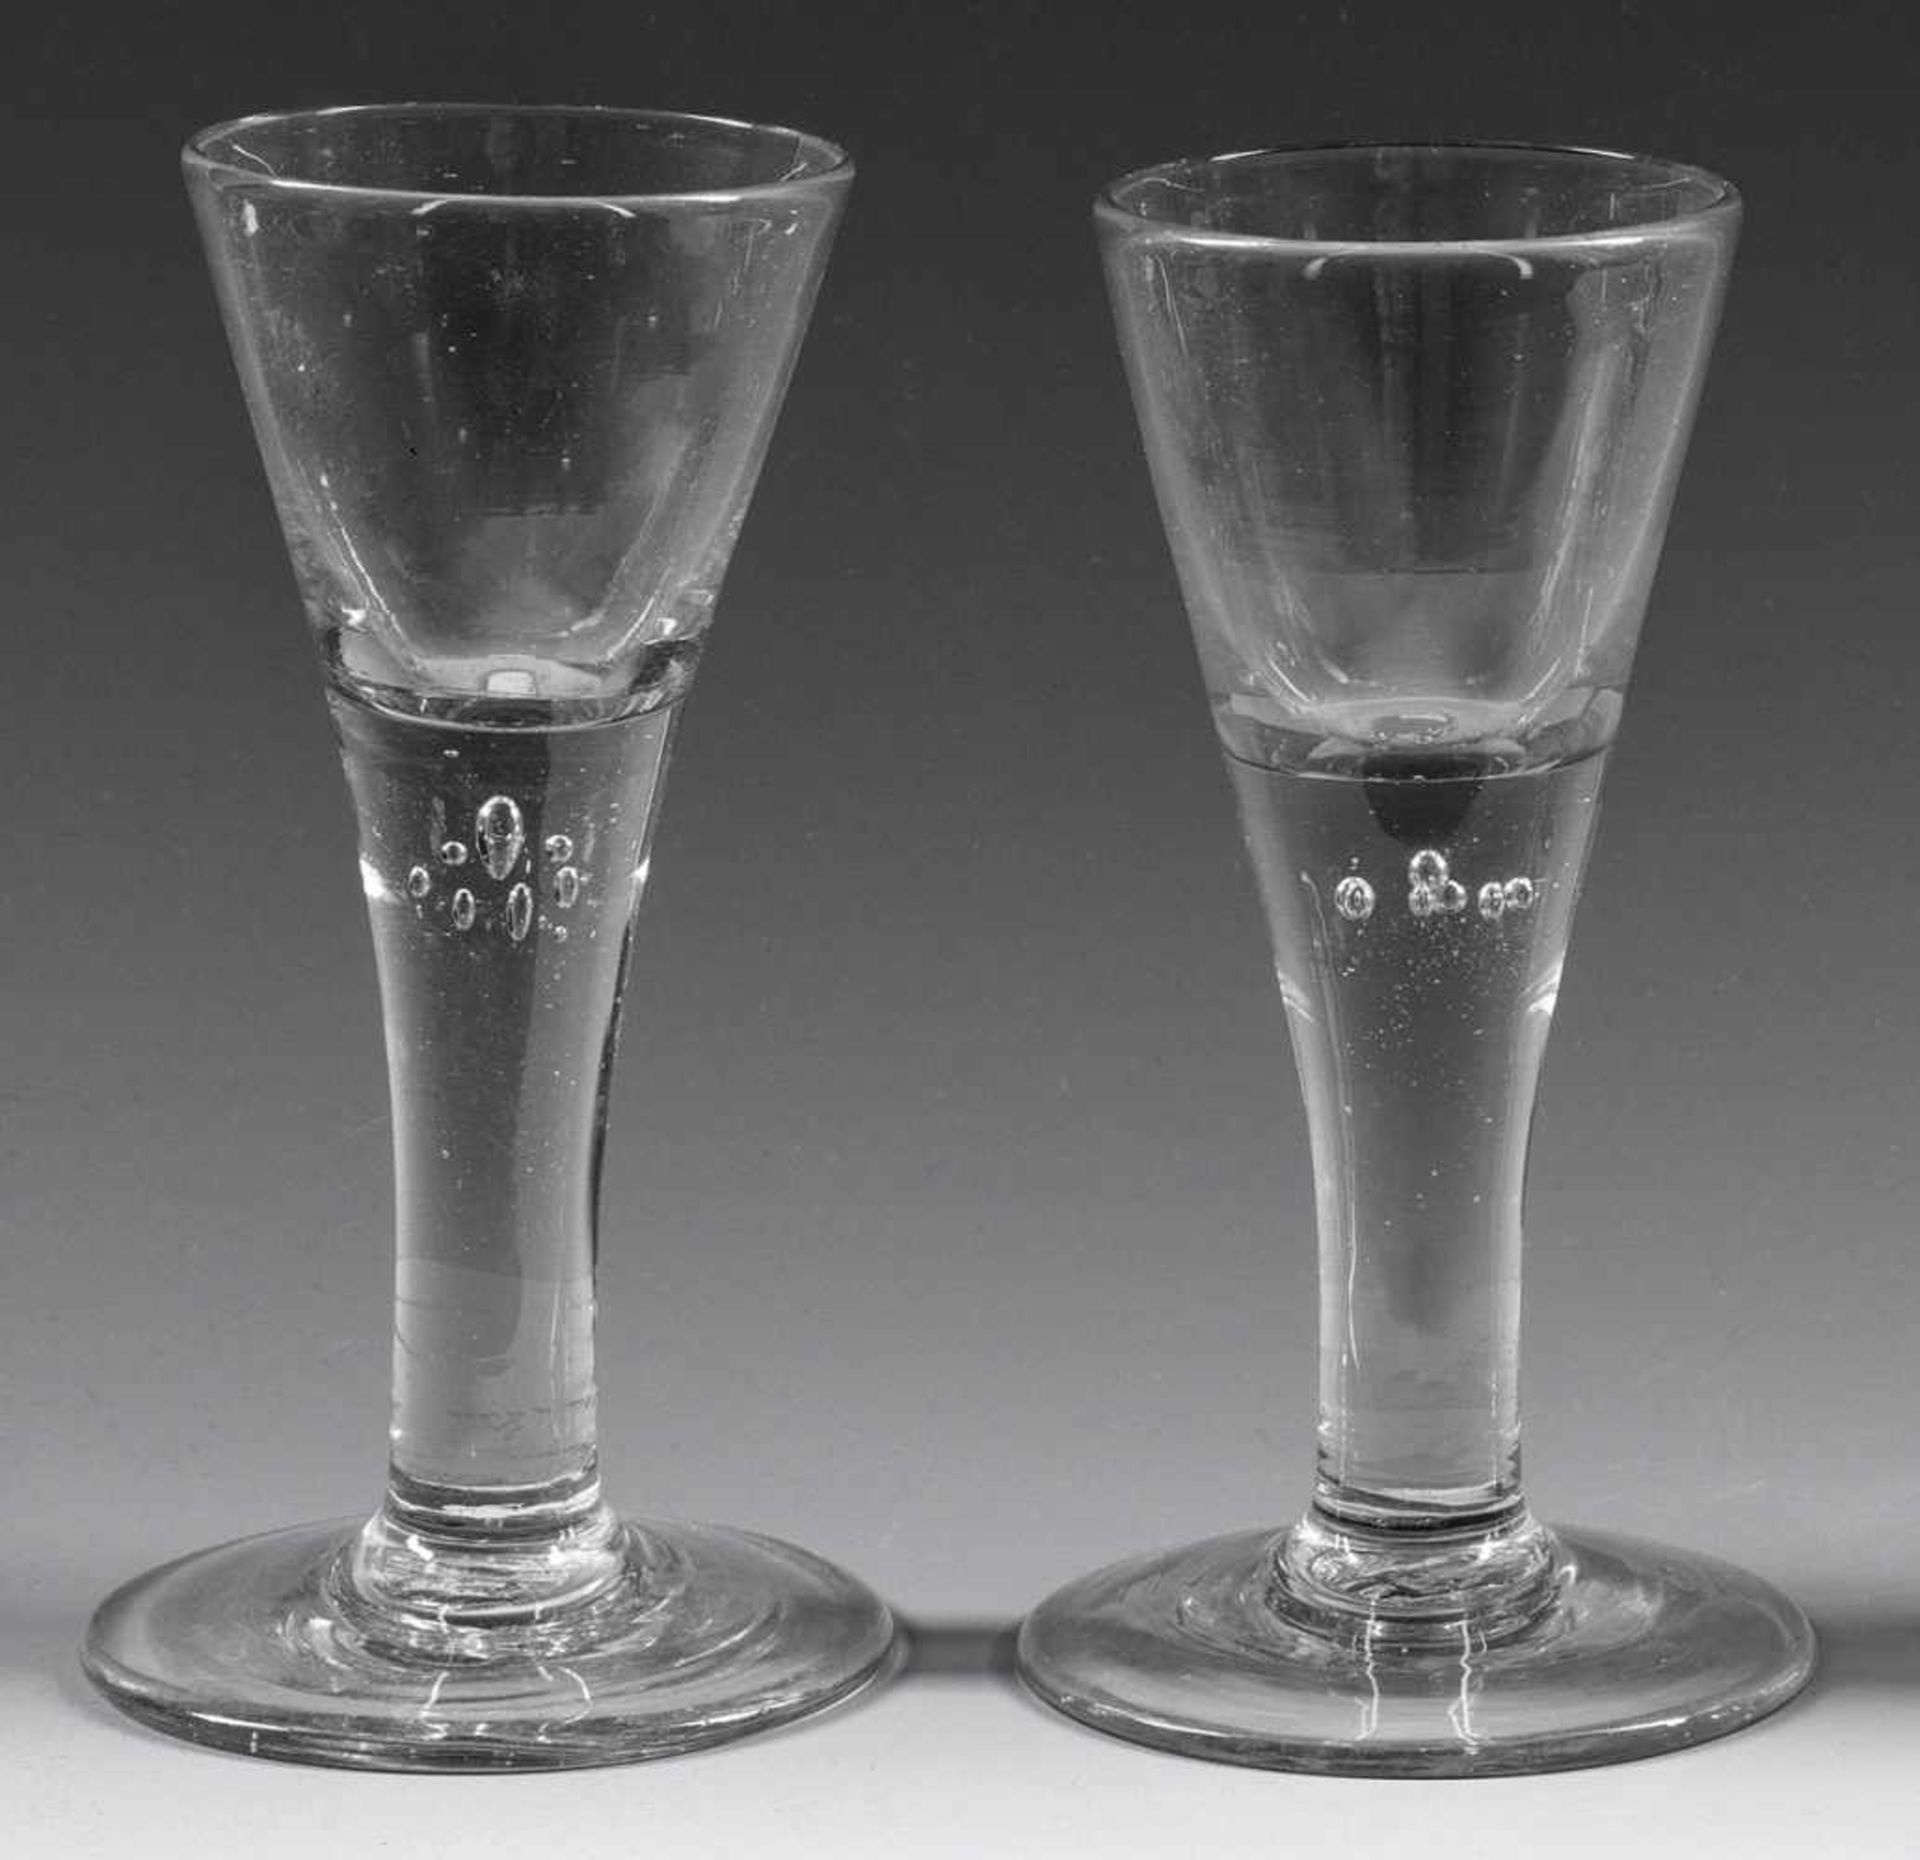 Paar Lauensteiner Barock-PokaleFarbloses, leicht graustichiges Glas. Spitzkelchform, im massiven